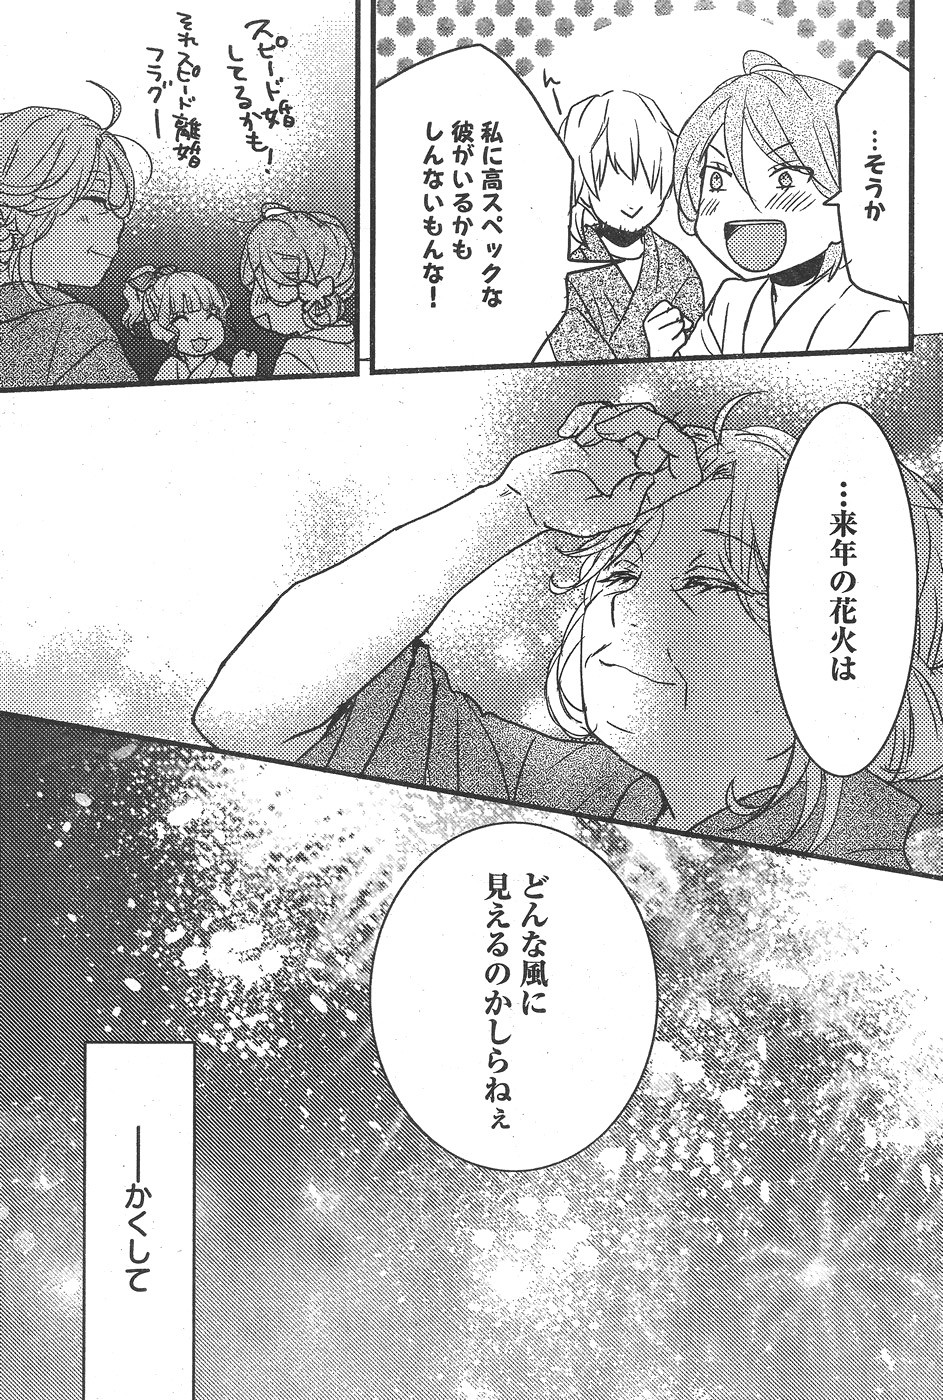 Bokura wa Minna Kawaisou - Chapter 74 - Page 23